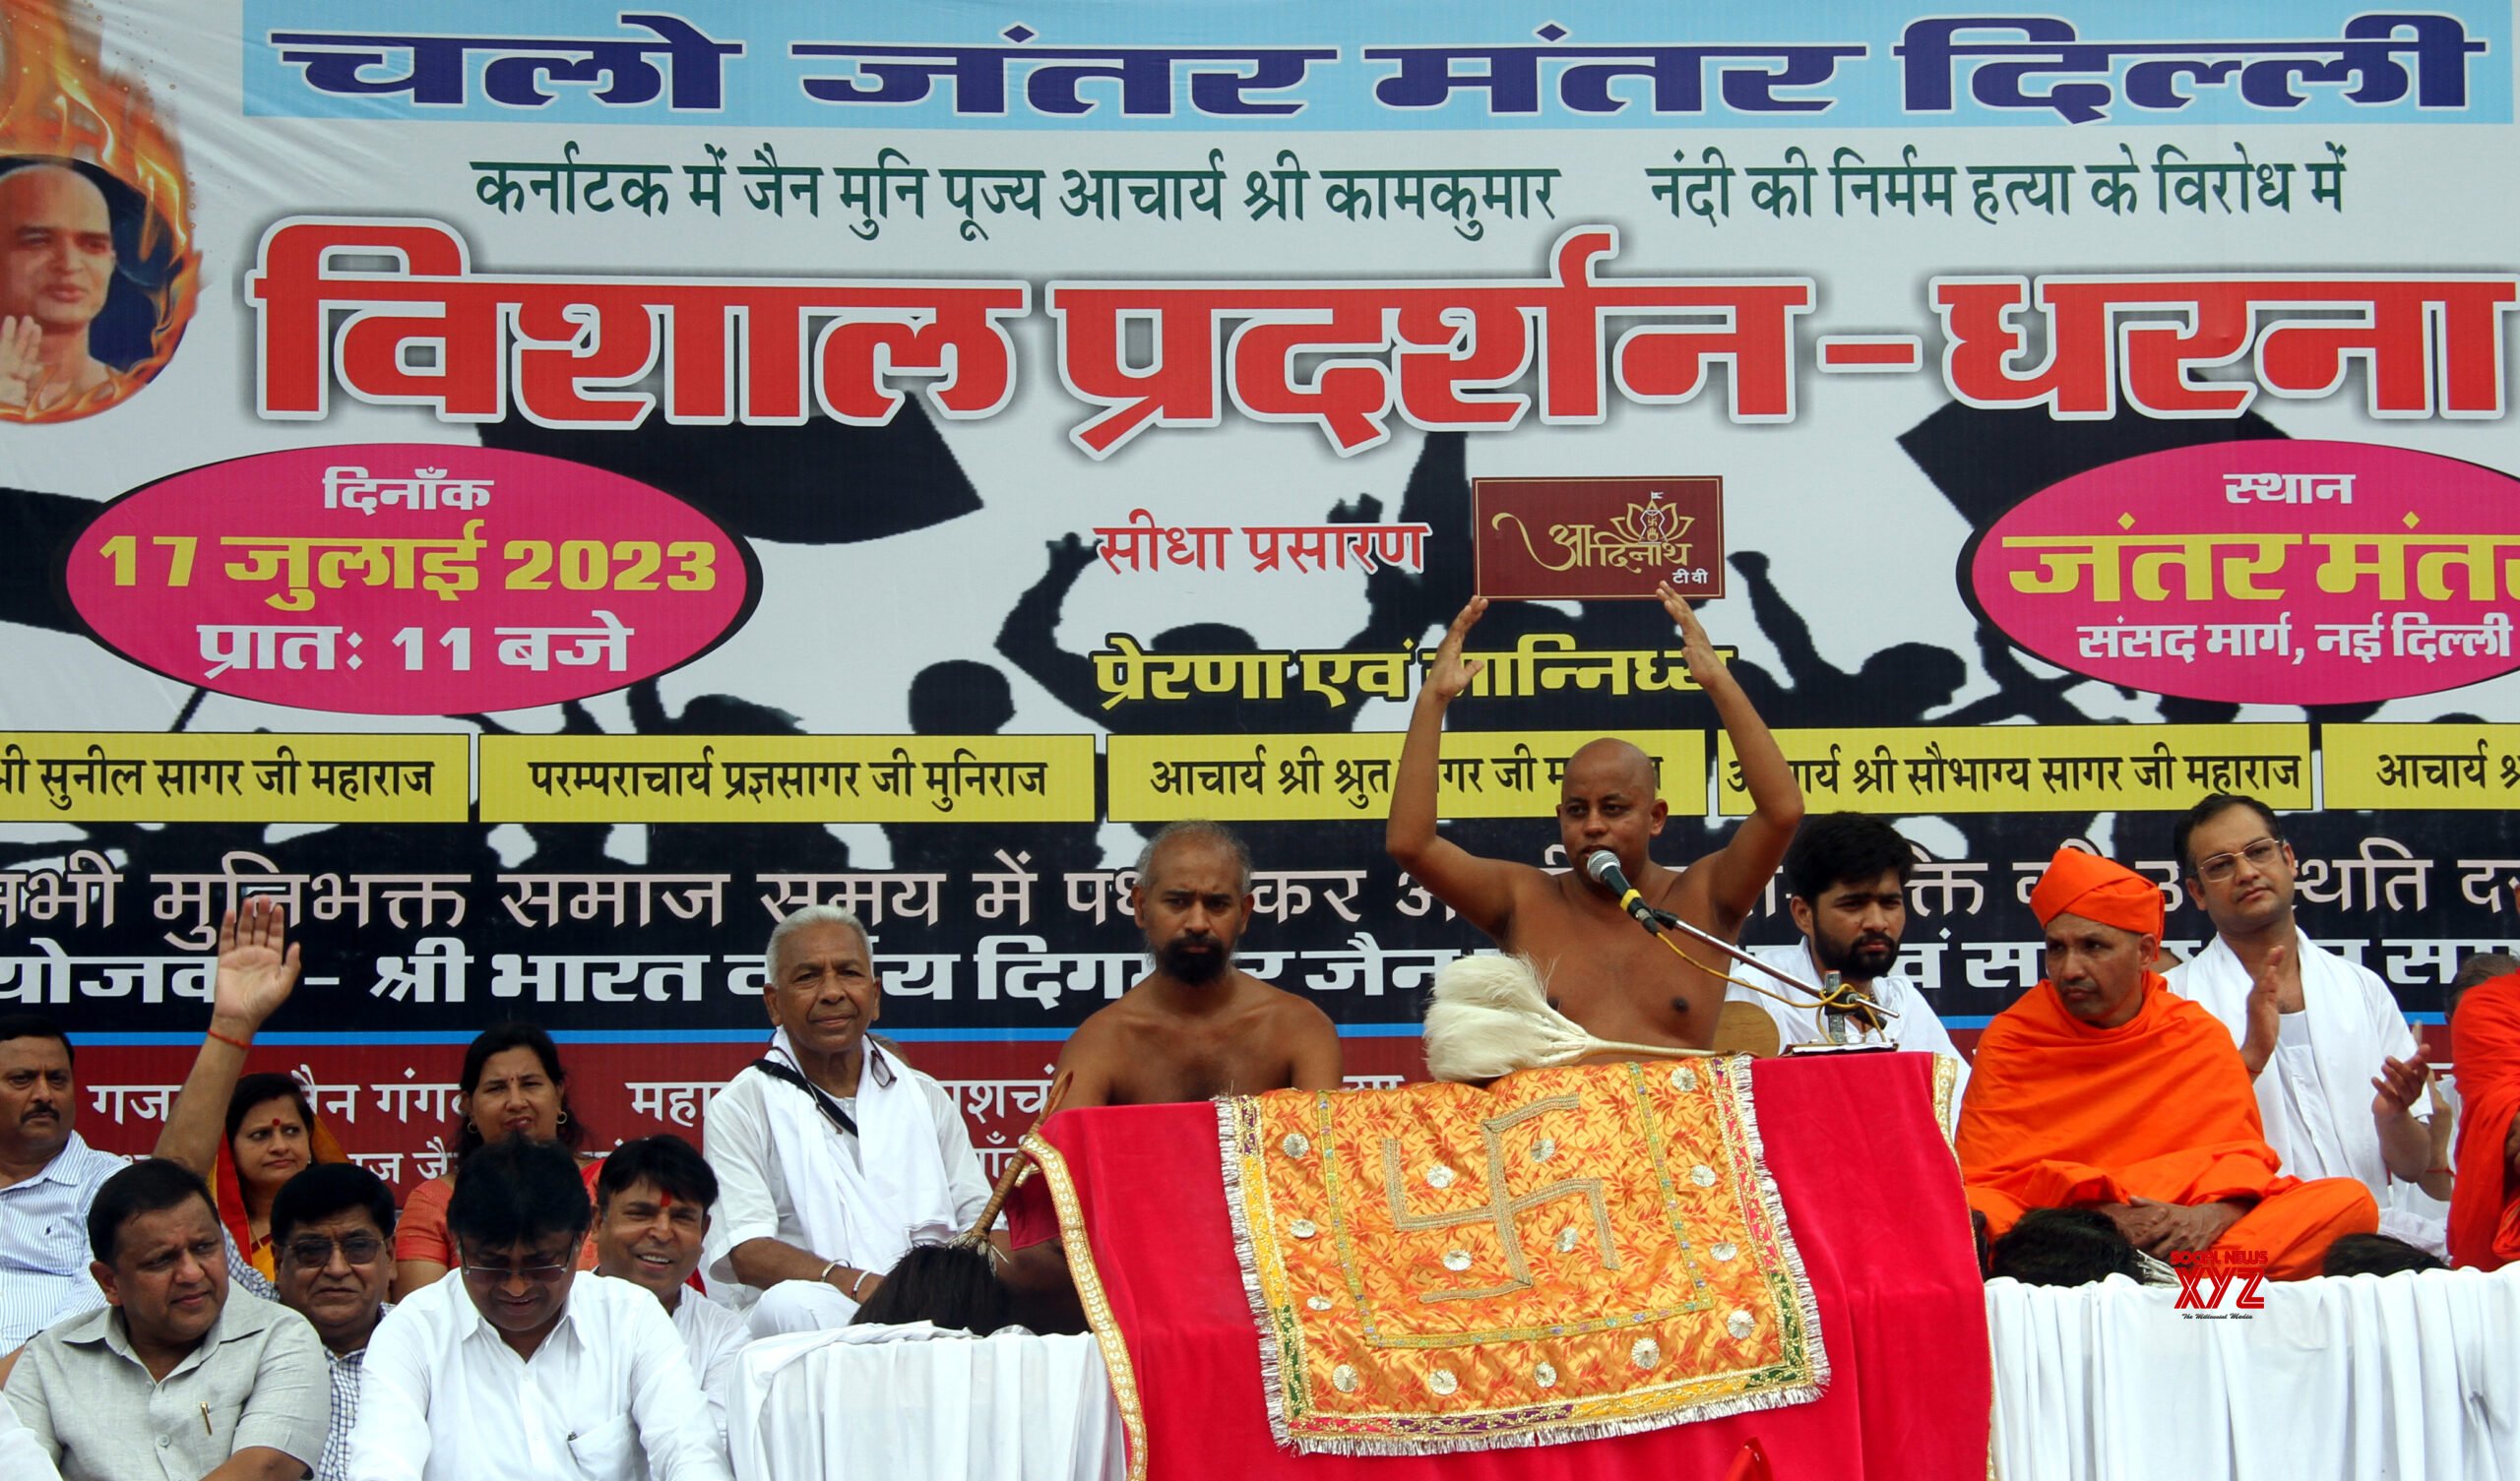 Jain Community Protests at Delhi’s Jantar Mantar, Demands CBI Investigation into Monk’s Gruesome Murder in Karnataka